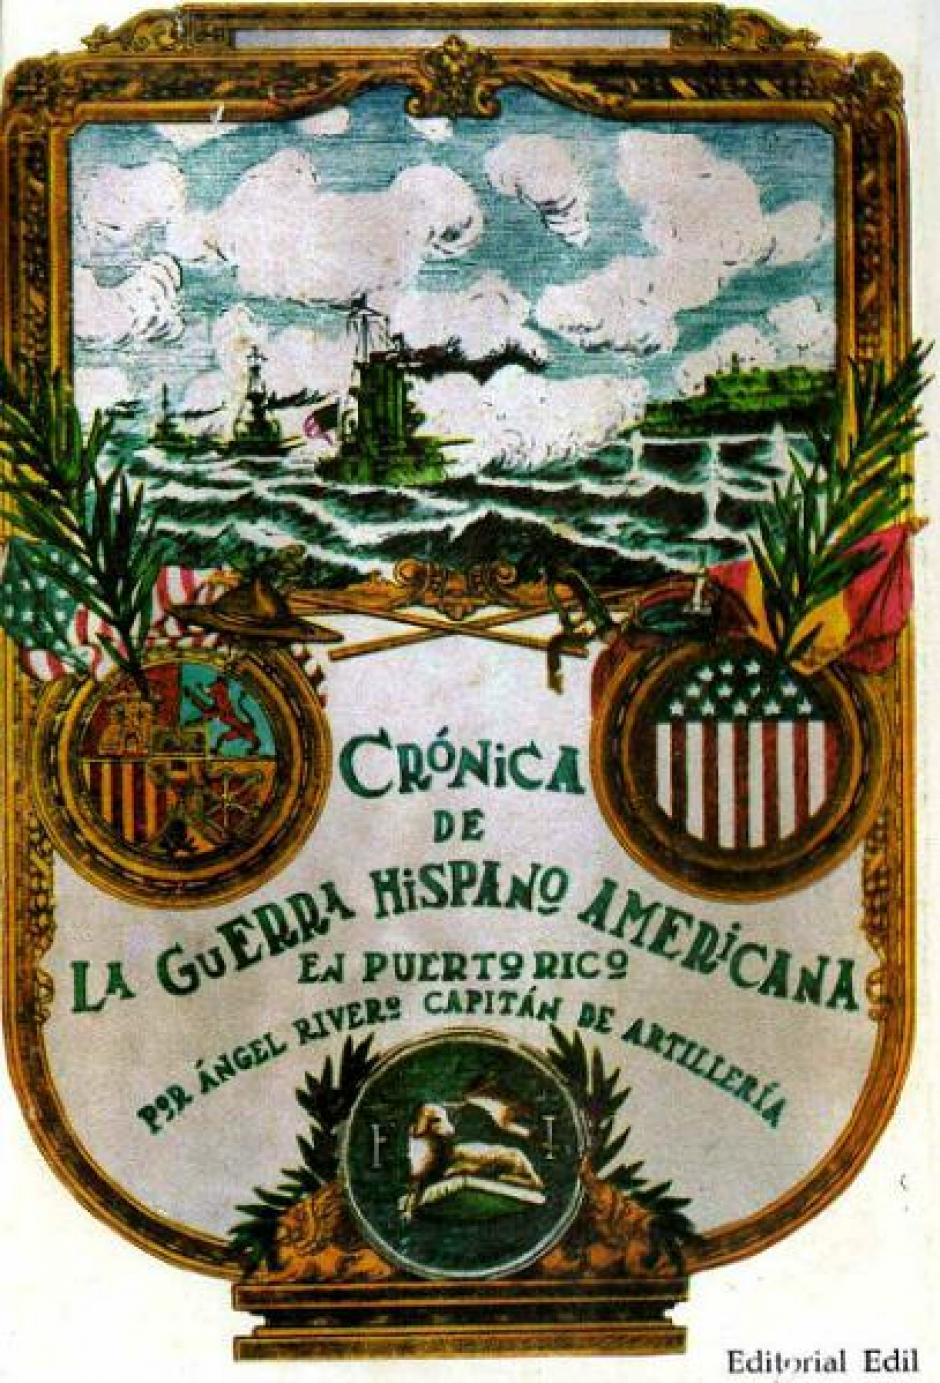 Cubierta del libro Crónica de la Guerra Hispano Americana